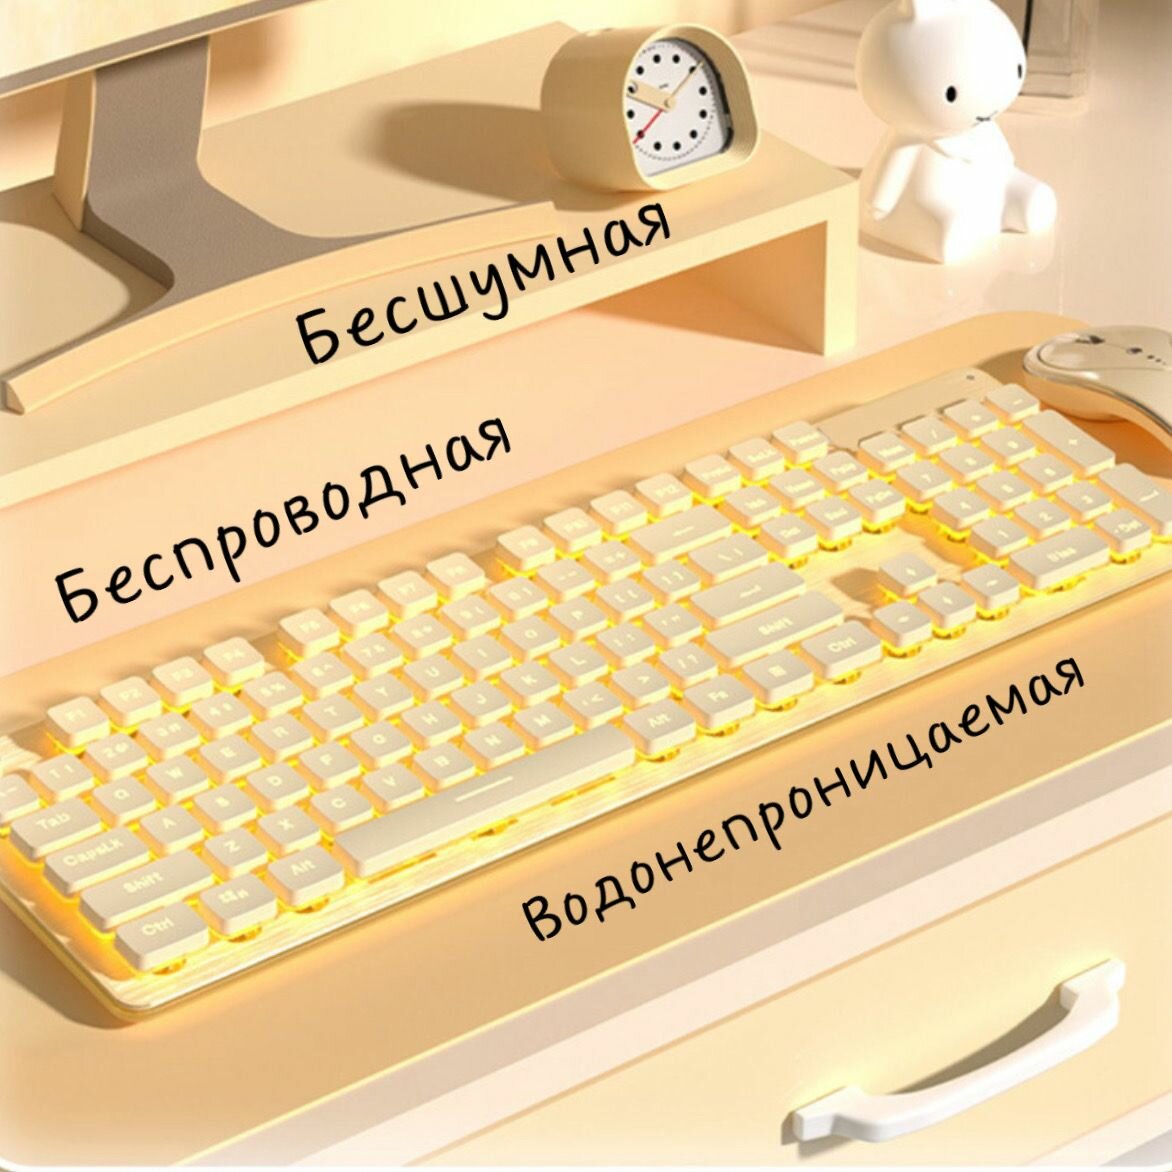 Беспроводная, водонепроницаемая клавиатура S&T Yeah бесшумная, стильная, с регулируемой подсветкой для геймеров, киберспортсменов, рабочего стола в офис + 2 вида наклеек с русскими буквами